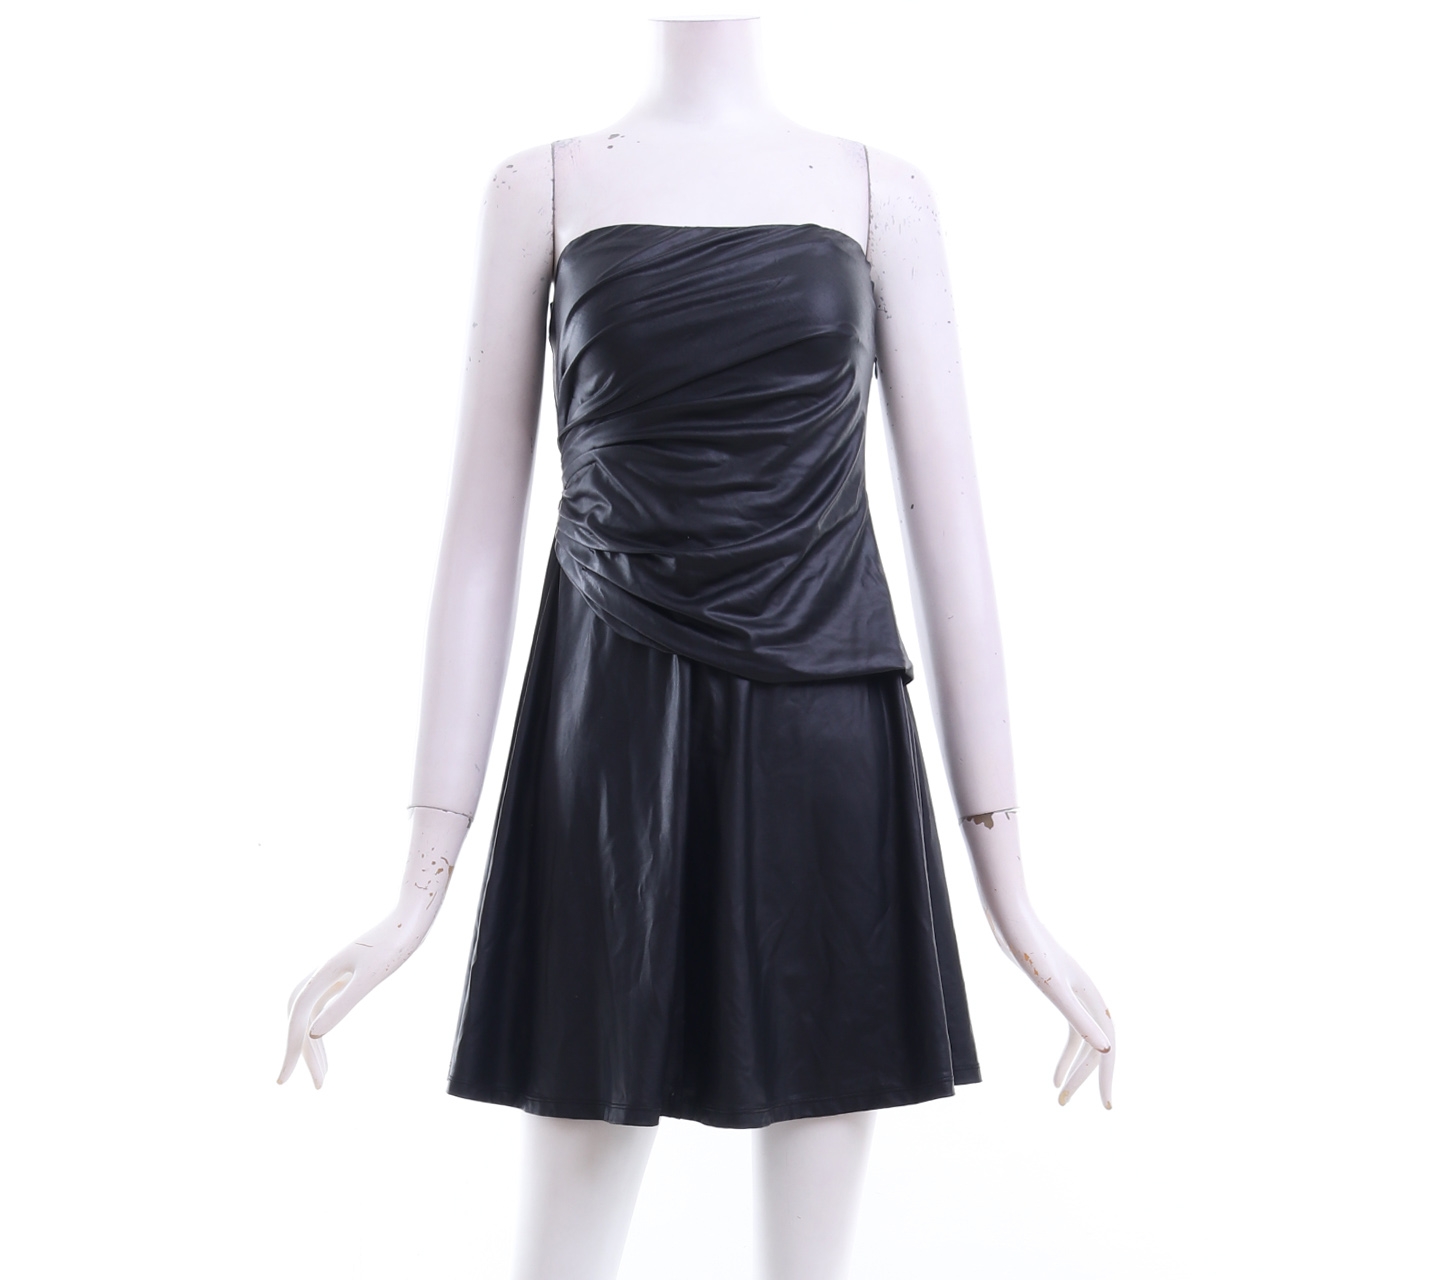 Mphosis Black Tube Mini Dress